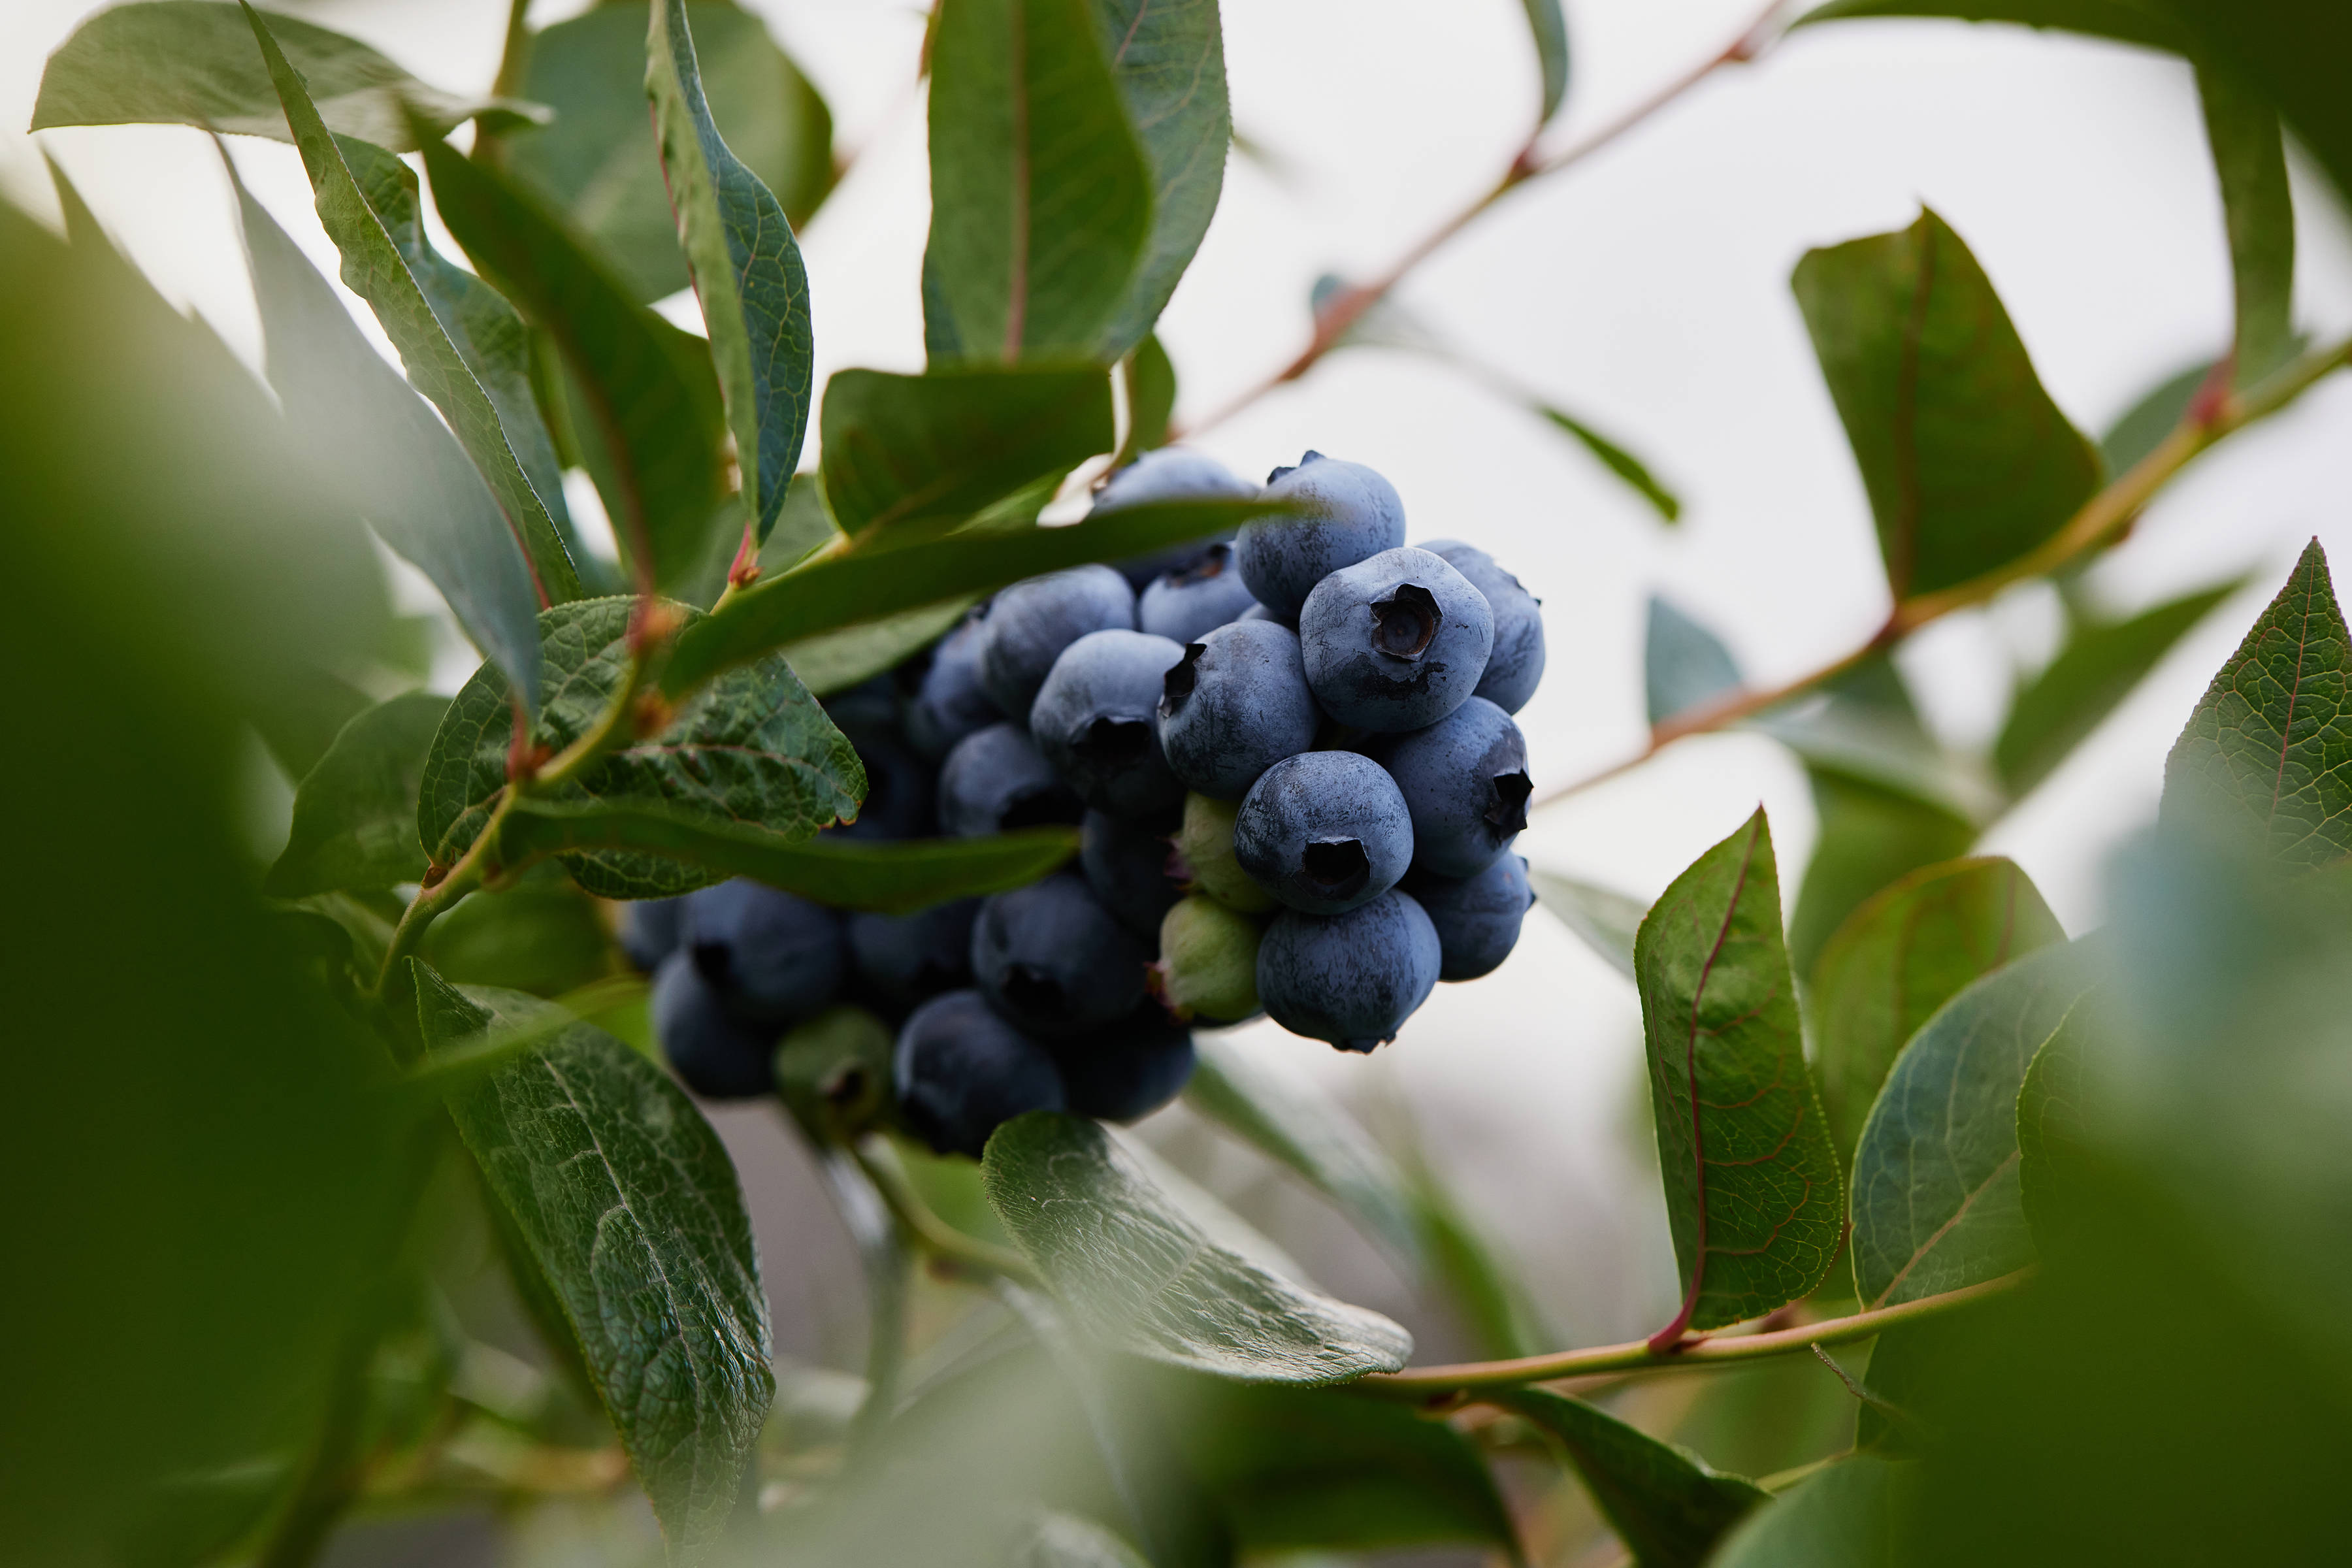 Blueberries by Tru Blu Berries, Southern Tasmania. Photo: Samuel Shelley.